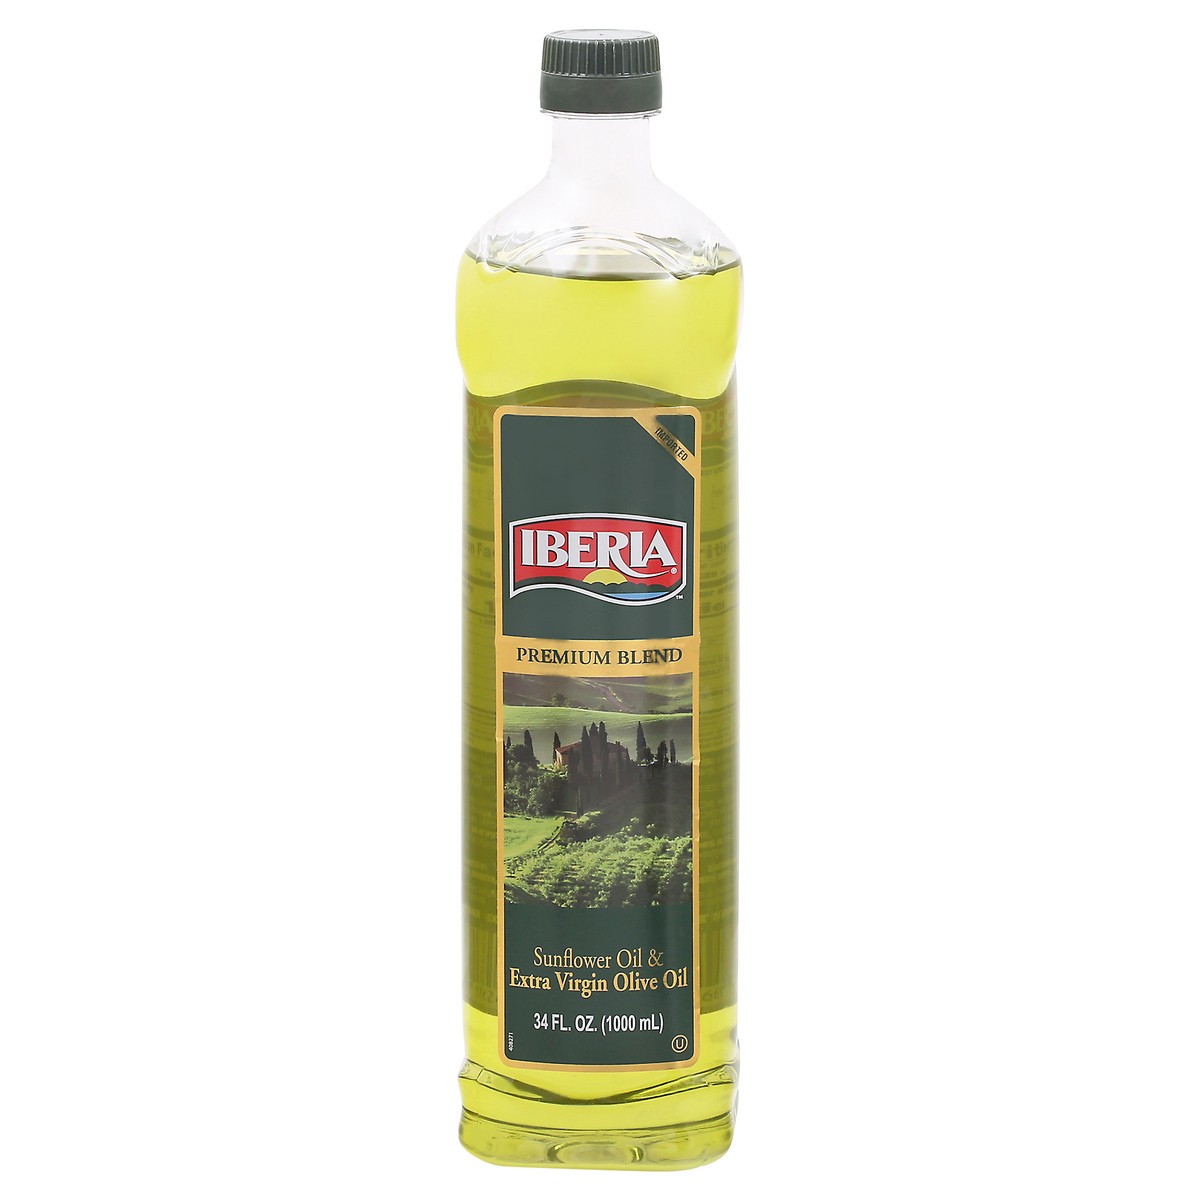 slide 1 of 9, Iberia Premium Blend Sunflower Oil & Extra Virgin Olive Oil 34 fl oz Bottle, 34 fl oz